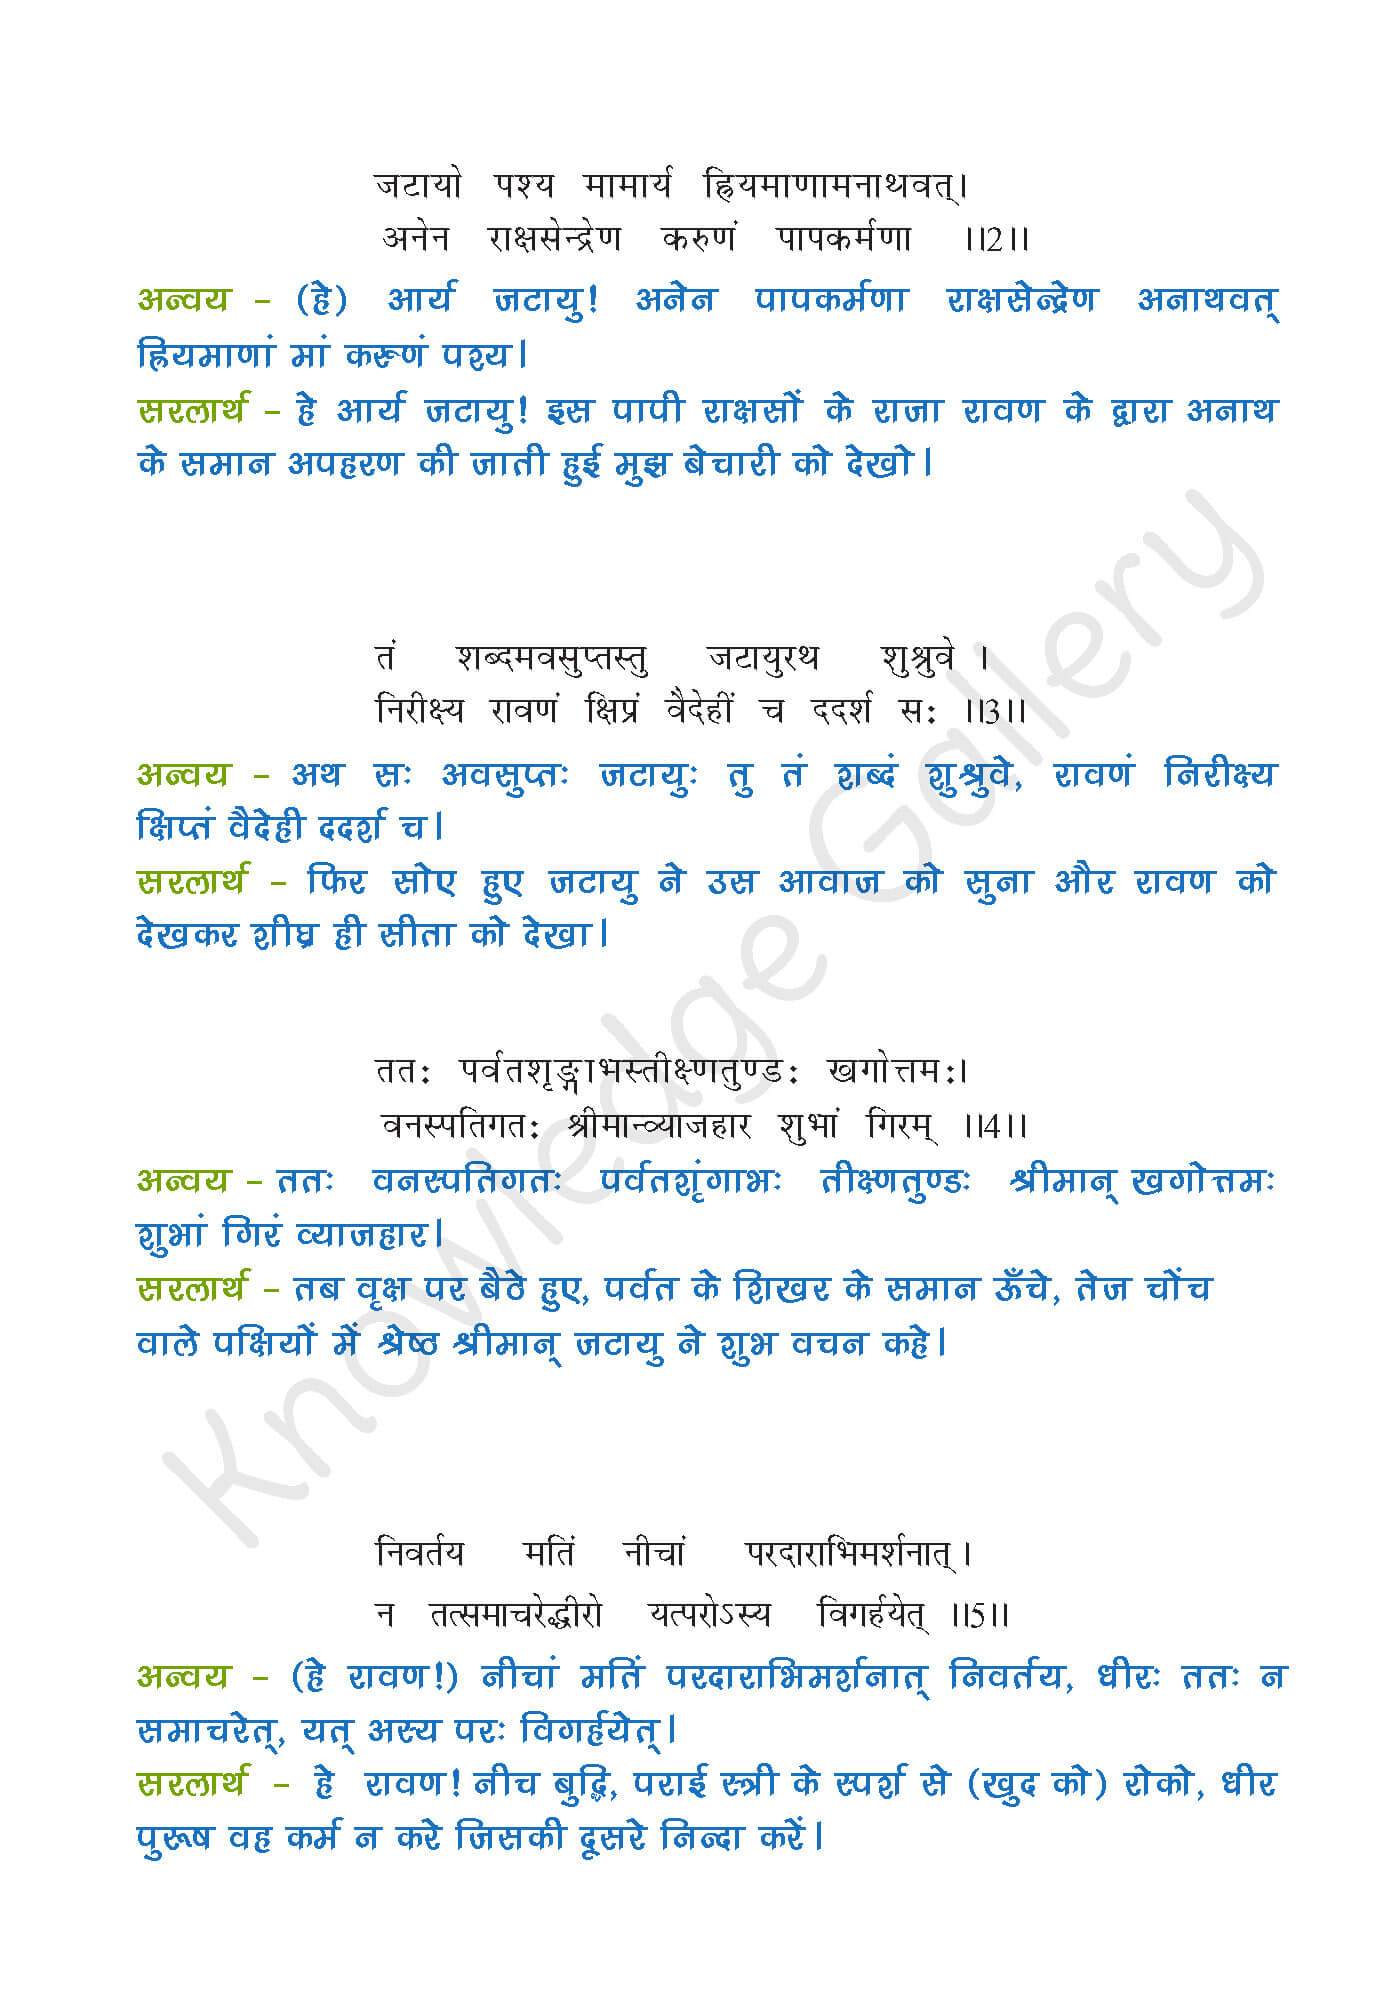 NCERT Solution For Class 9 Sanskrit Chapter 8 part 2